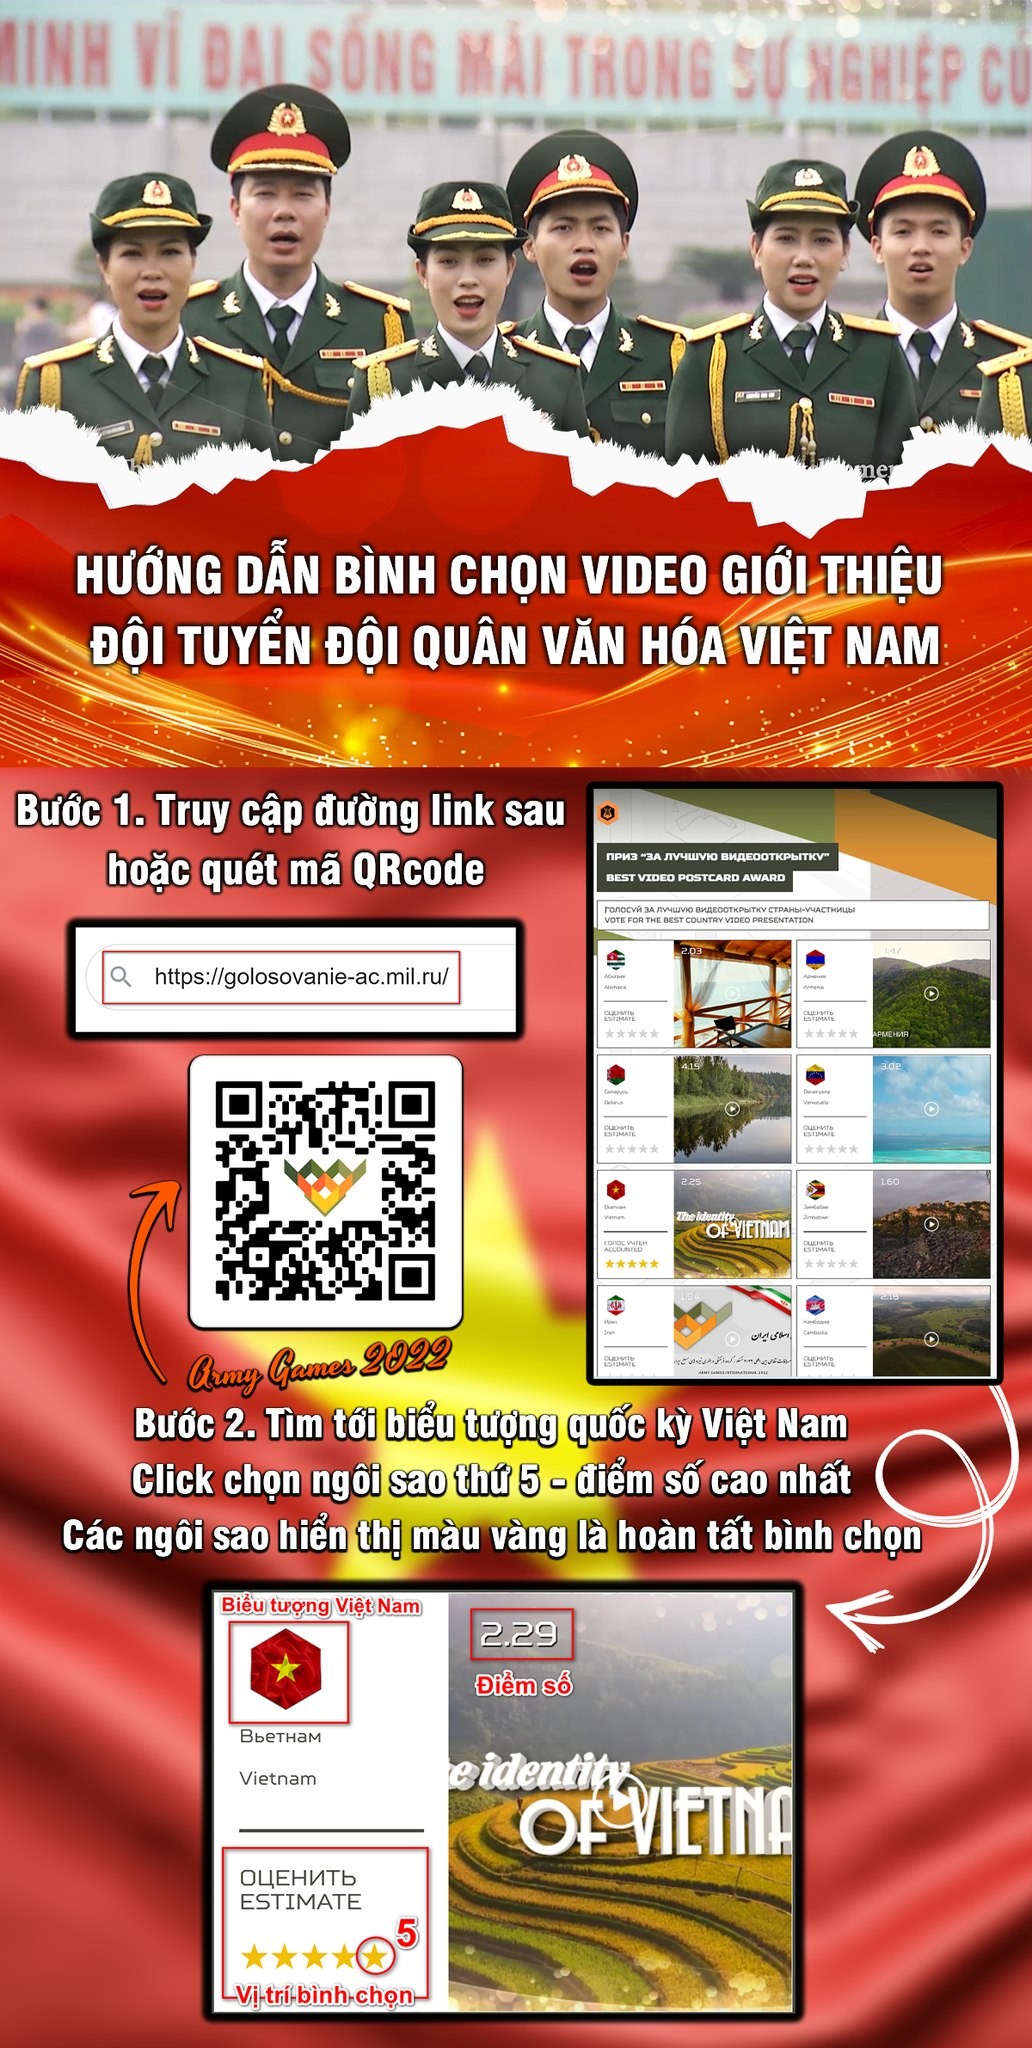 Bình chọn video giới thiệu “Đội quân Văn hóa” cho Đội tuyển QĐND Việt Nam tại Army Games 2022